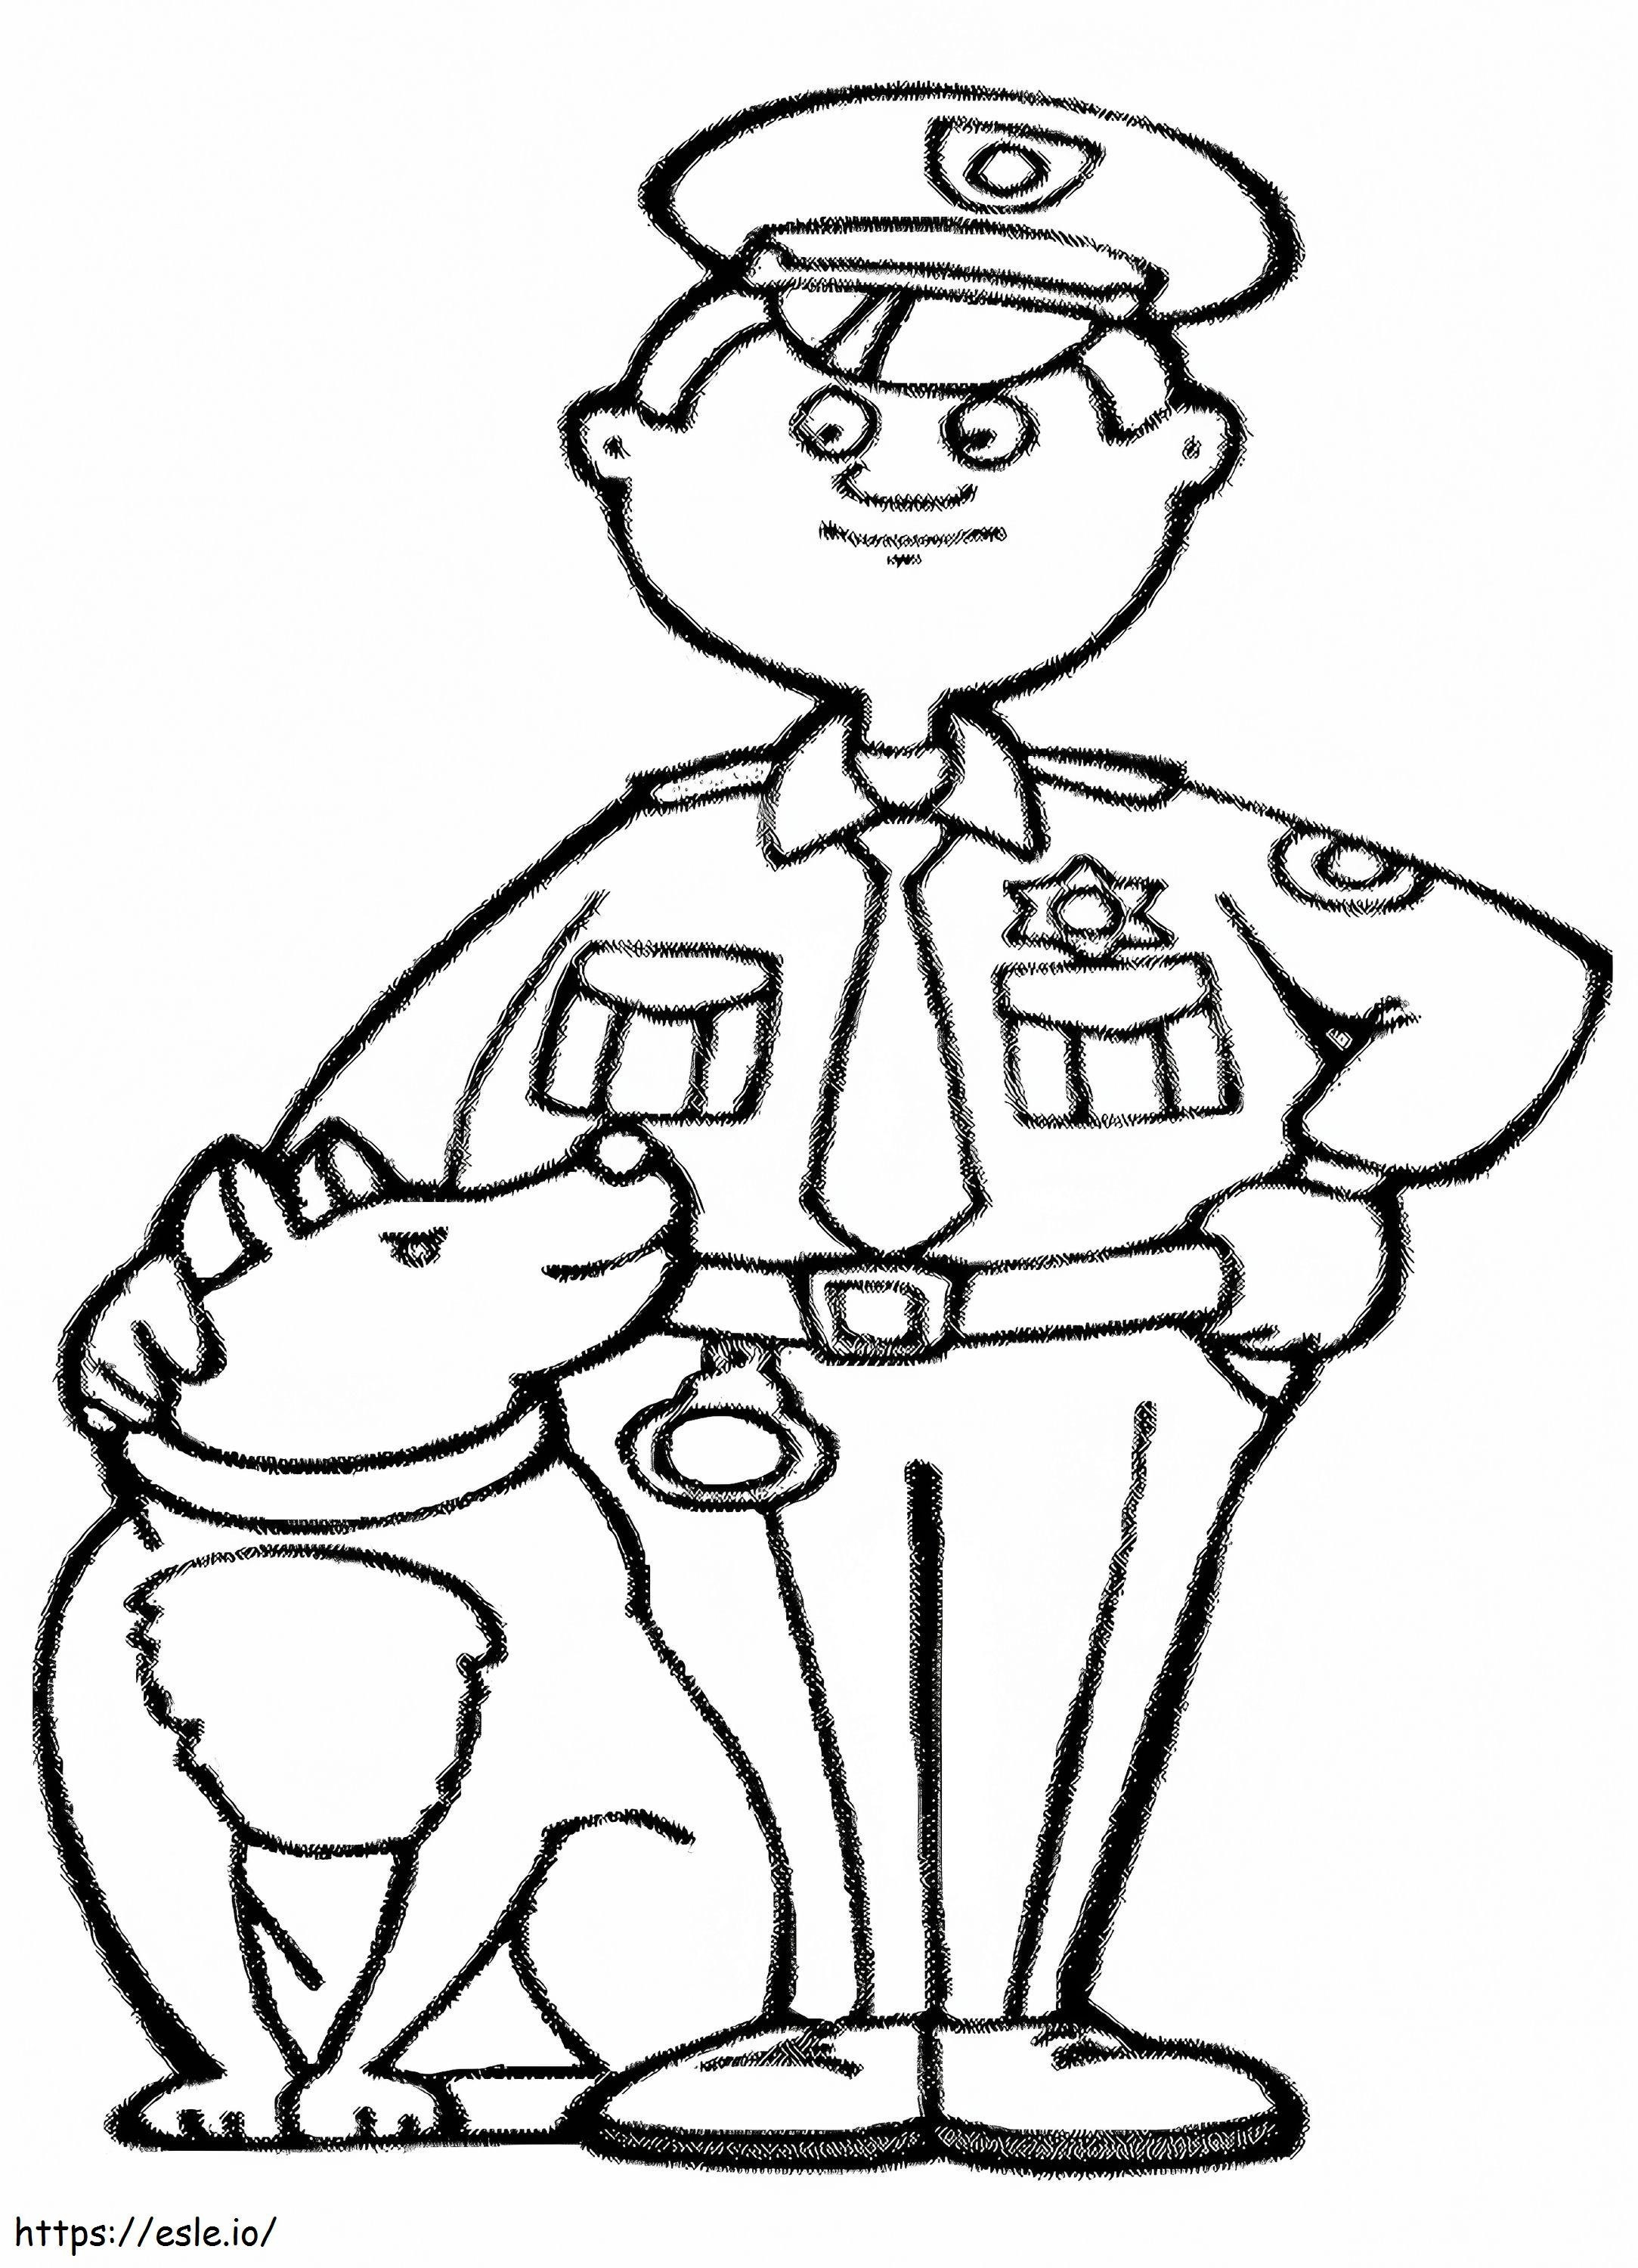 Polizei und Hund ausmalbilder